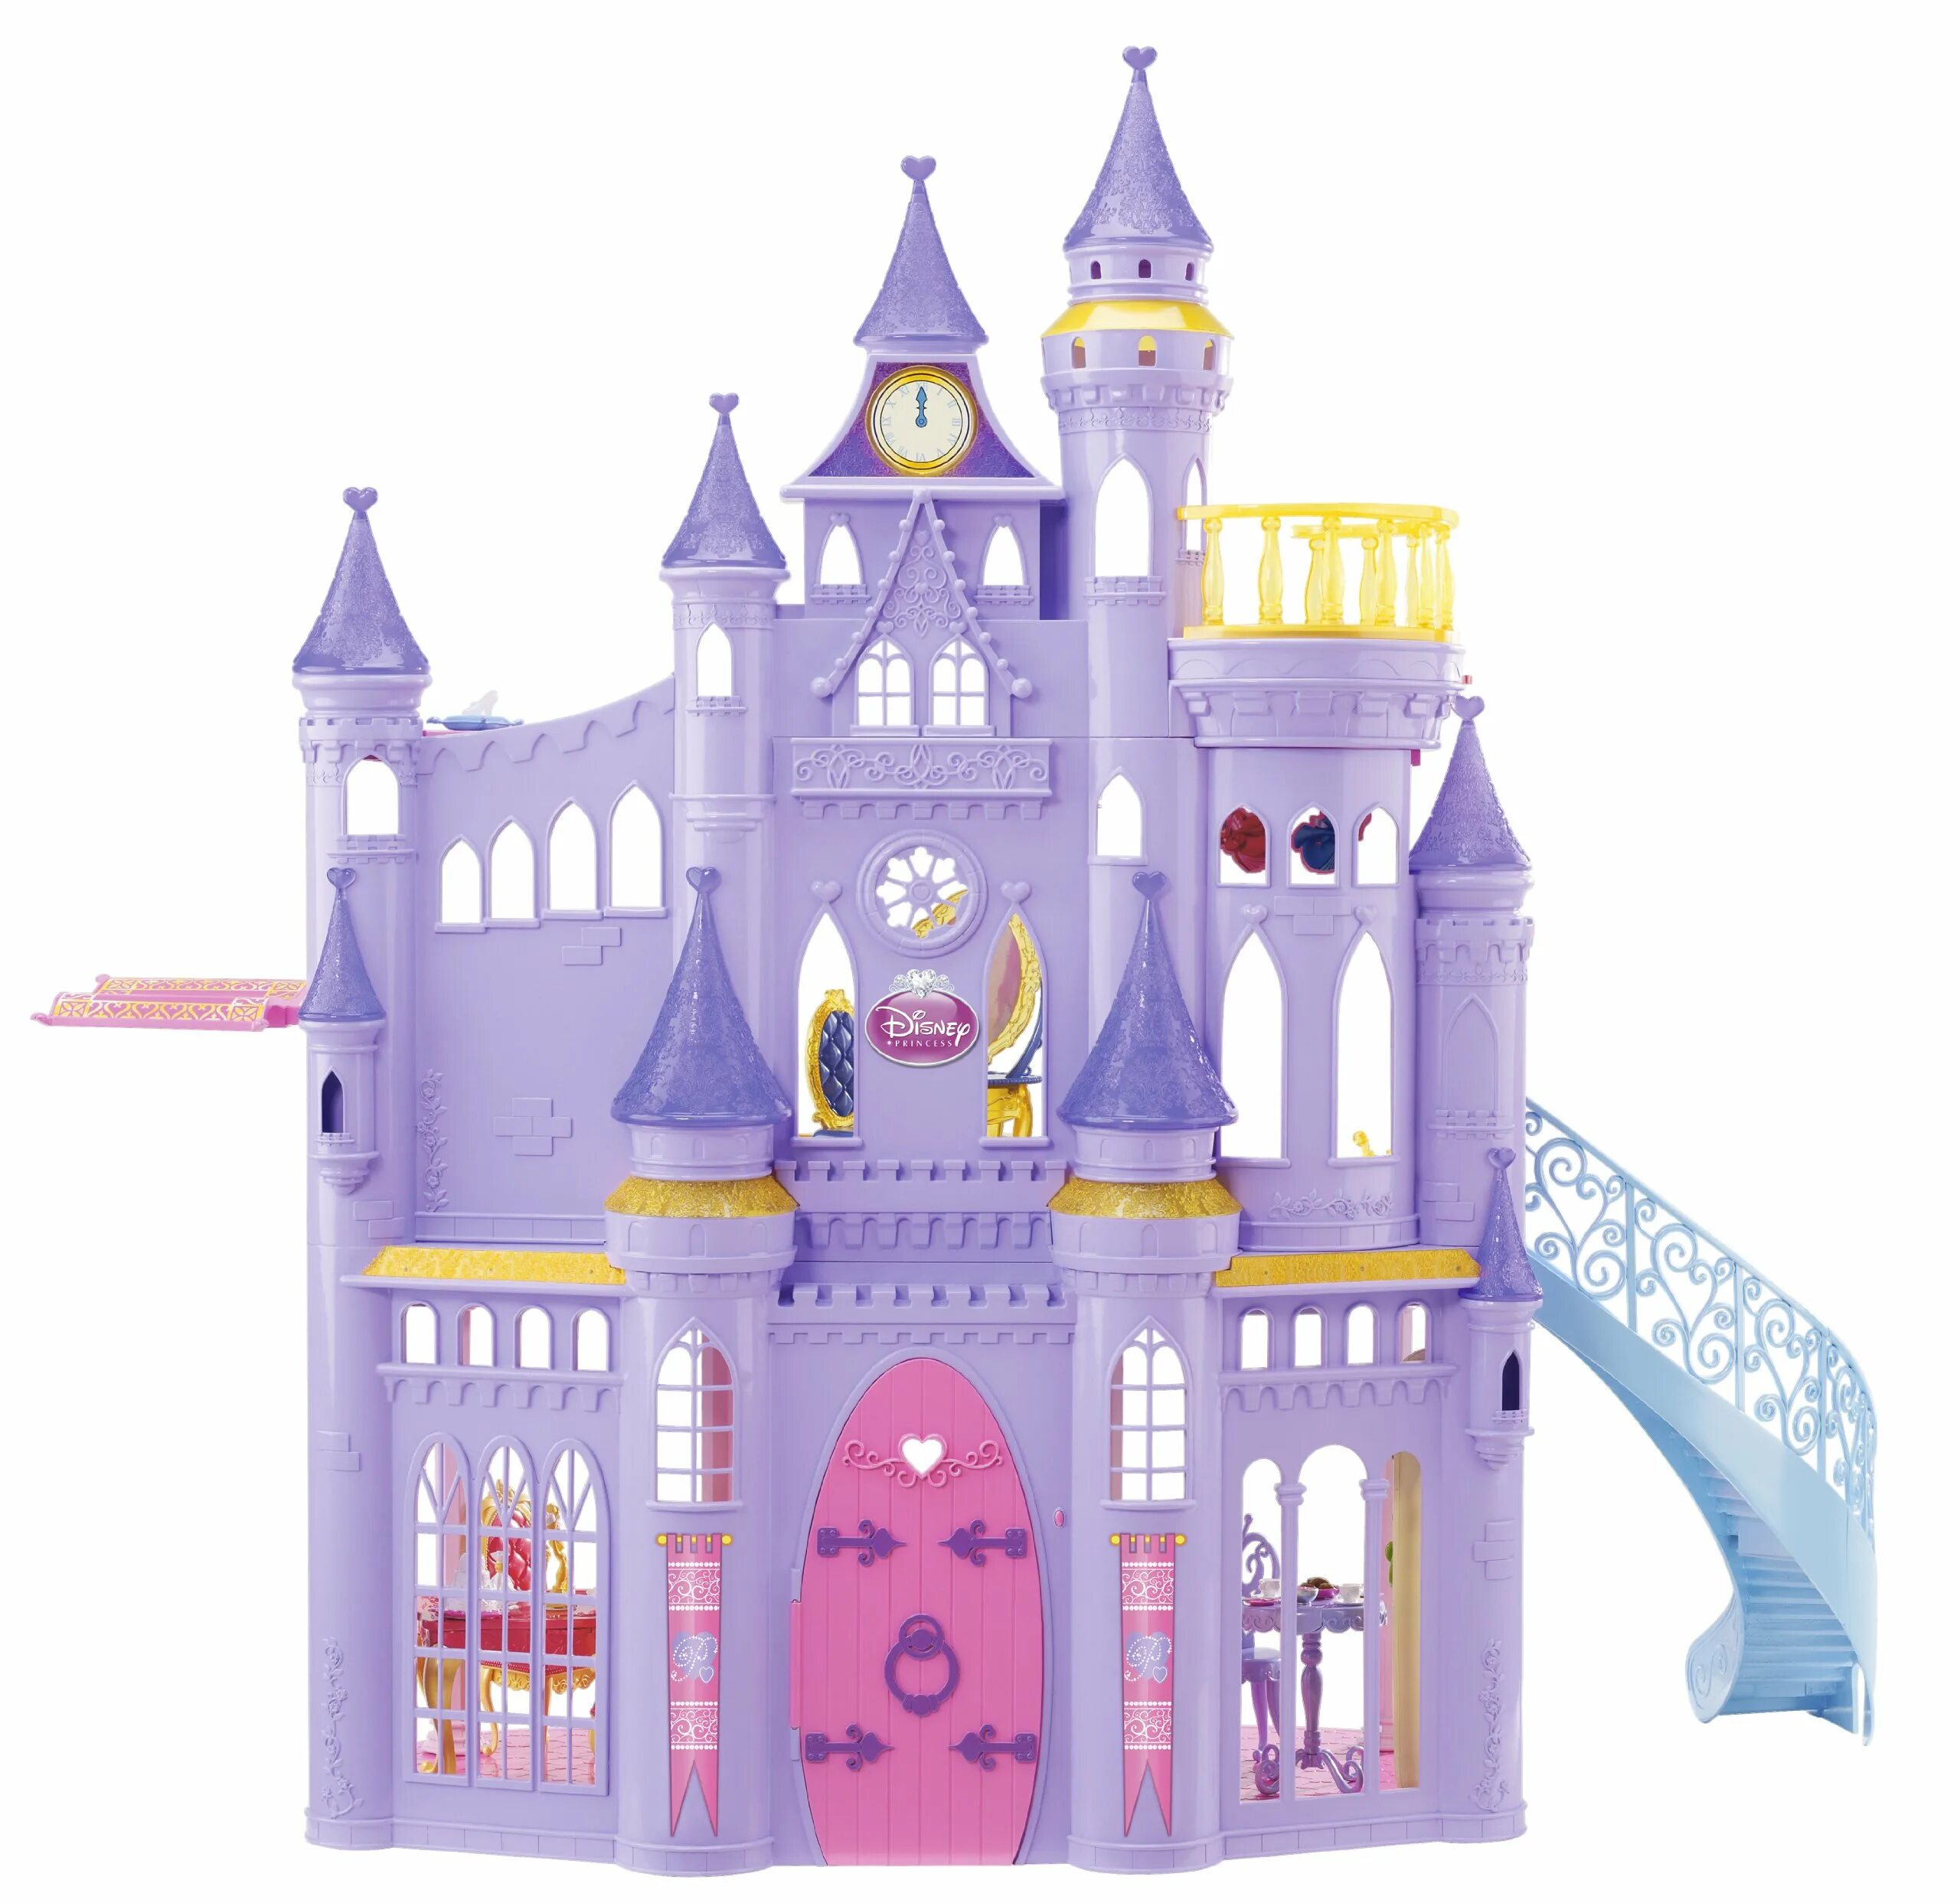 Маленькая принцесса замок. Сказочный замок принцесс Mattel v9233. Замок Princess замок Disney. Принцесса Диснея Киндерелла замок. Замок принцессы Бель.